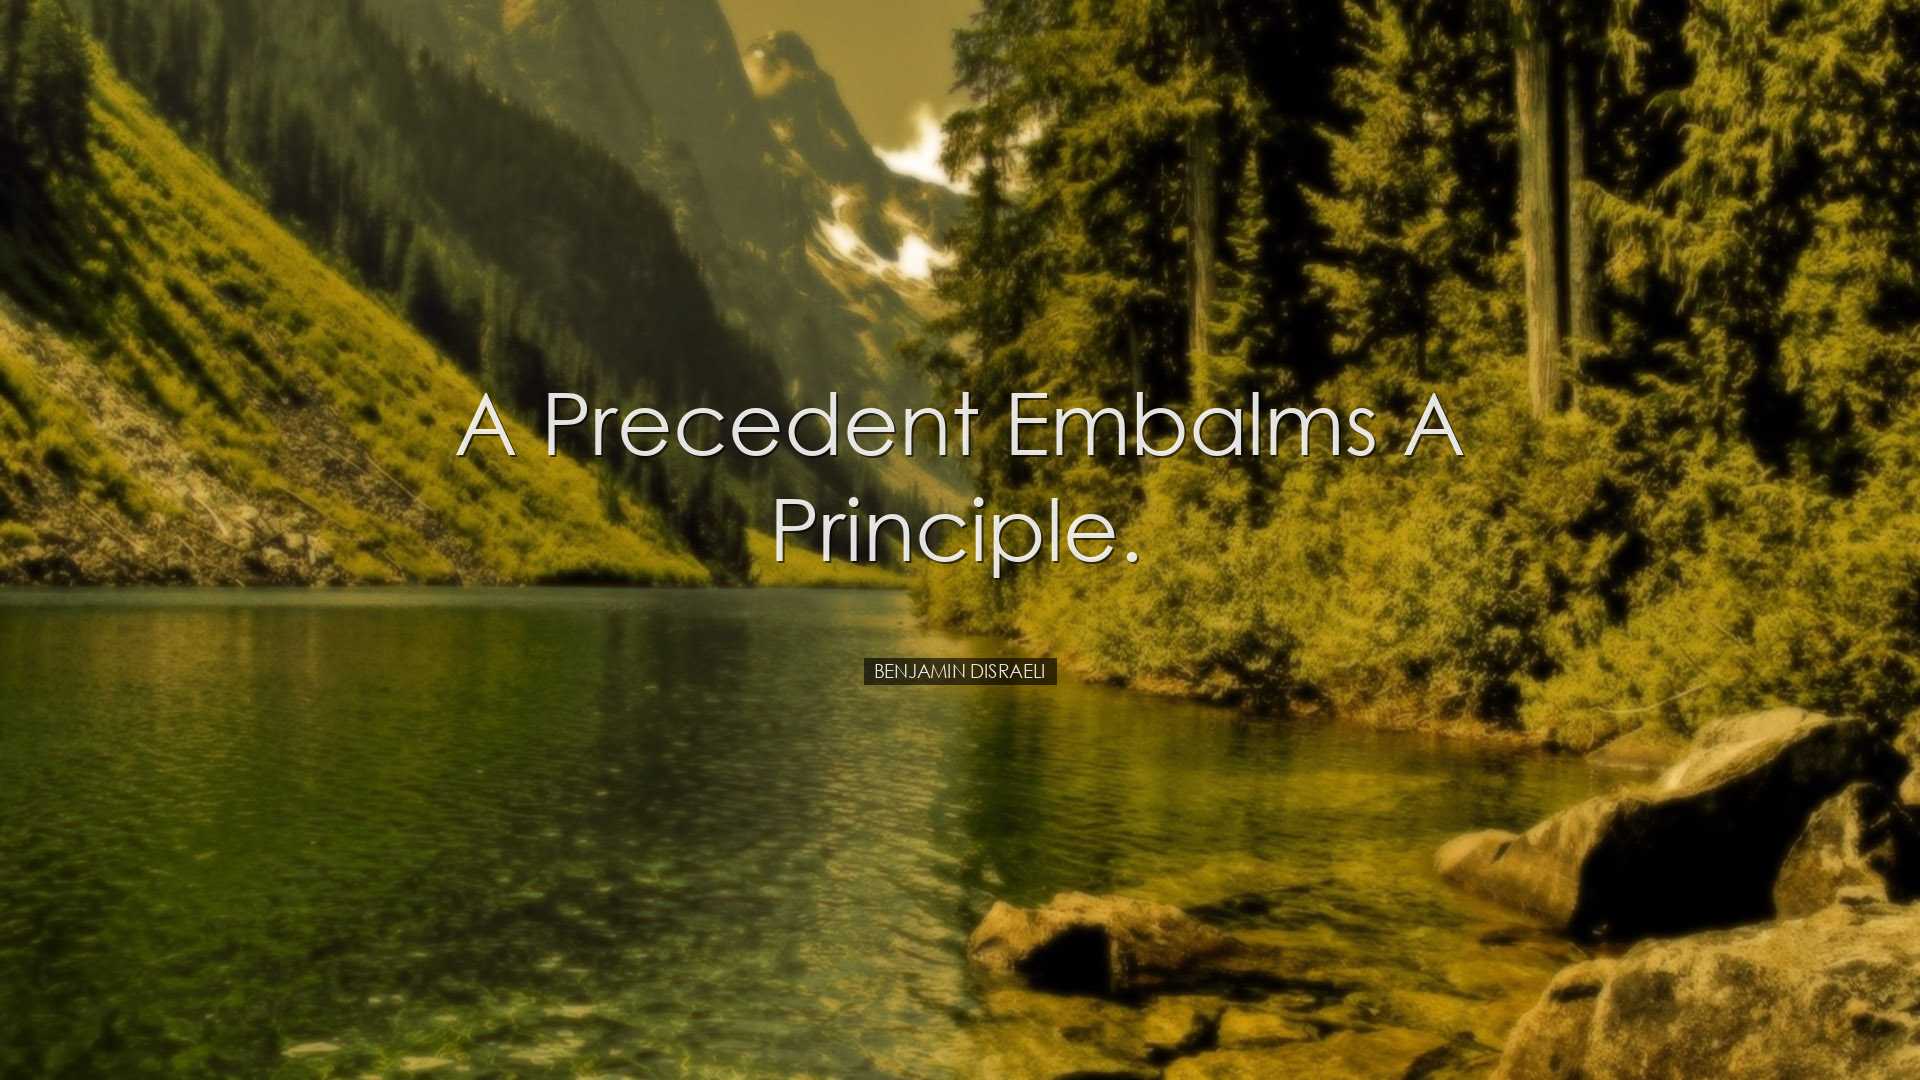 A precedent embalms a principle. - Benjamin Disraeli